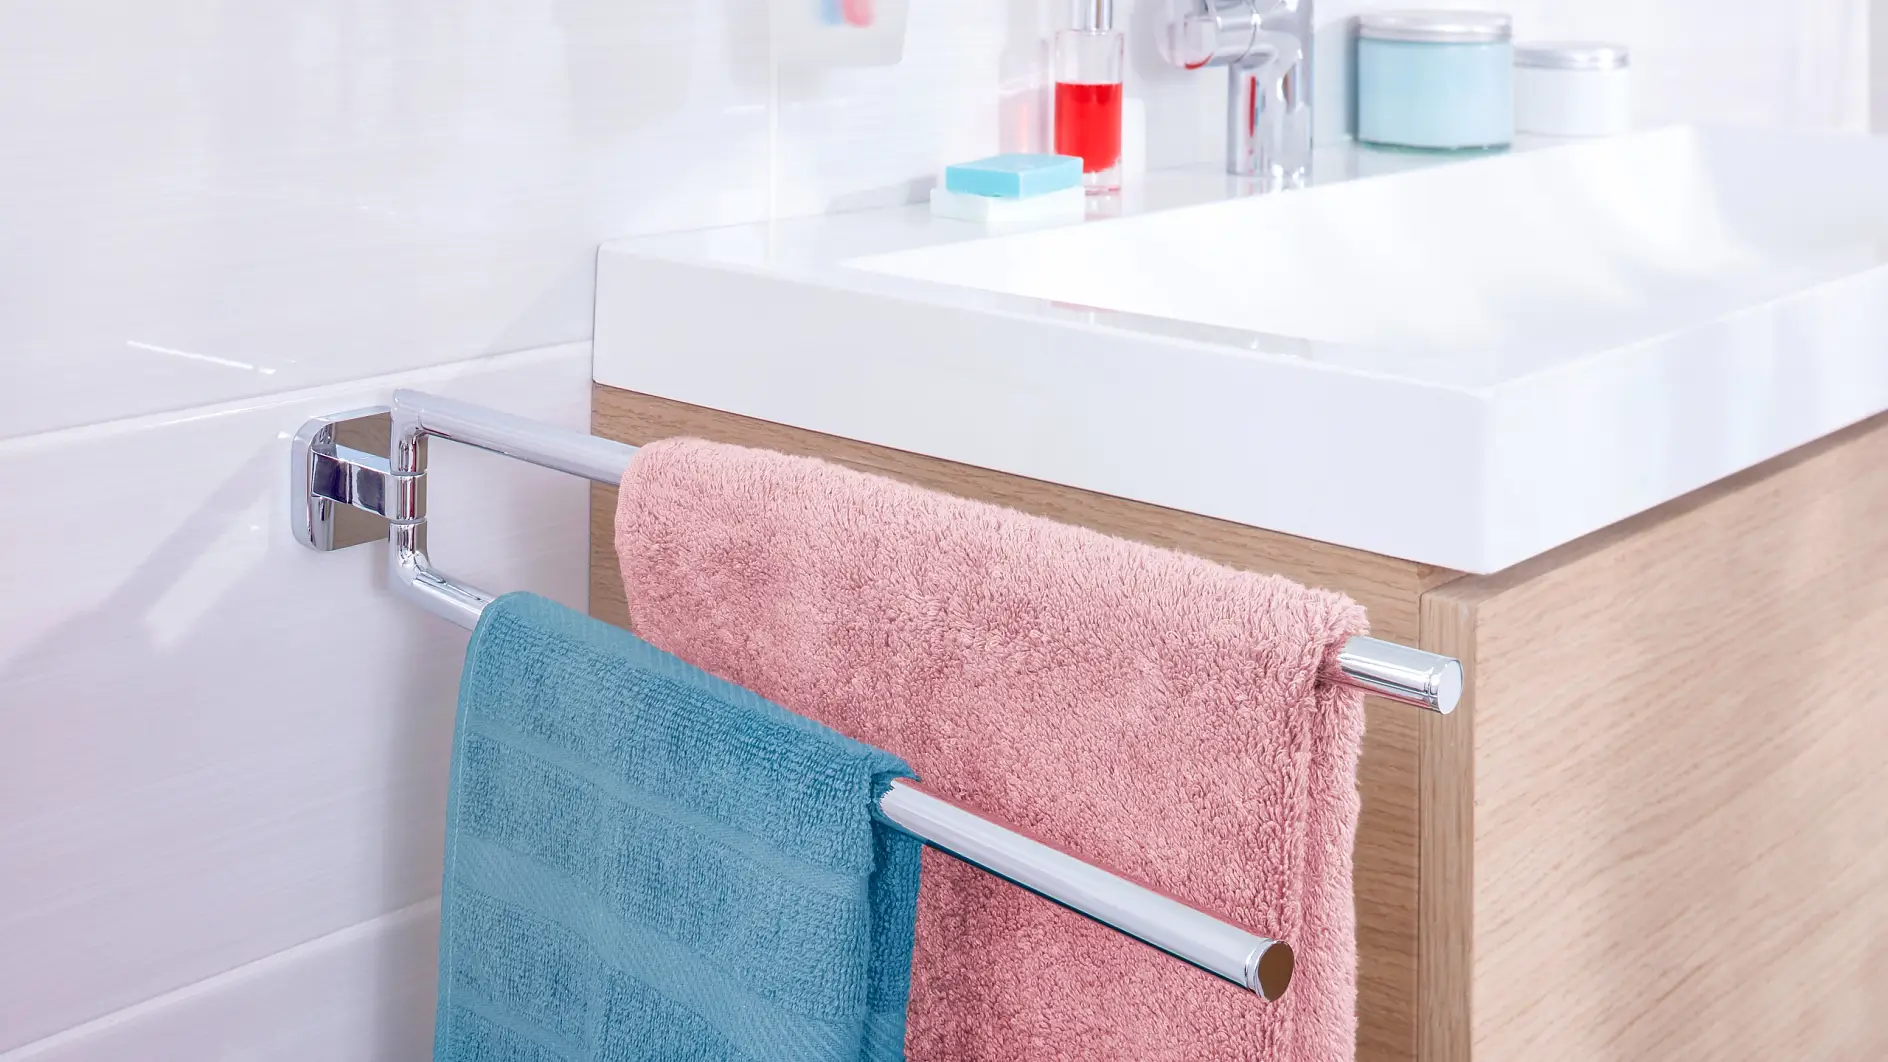 Trzymaj ręczniki blisko miejsca, w którym ich potrzebujesz i pozostaw je do swobodnego wyschnięcia po użyciu.